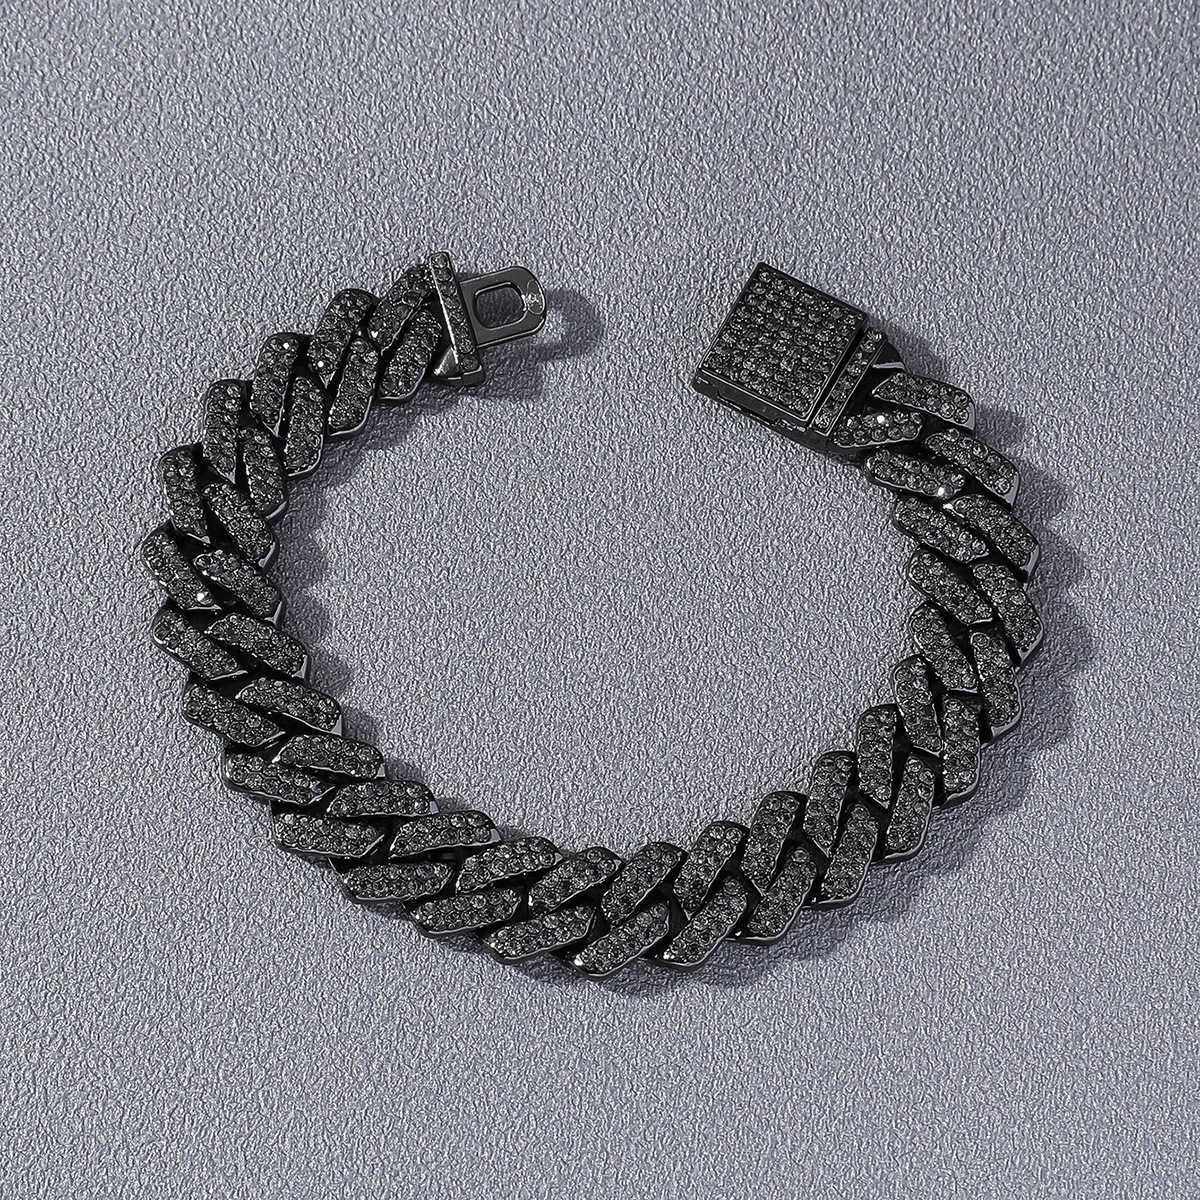 Black (bracelet) -8-inch